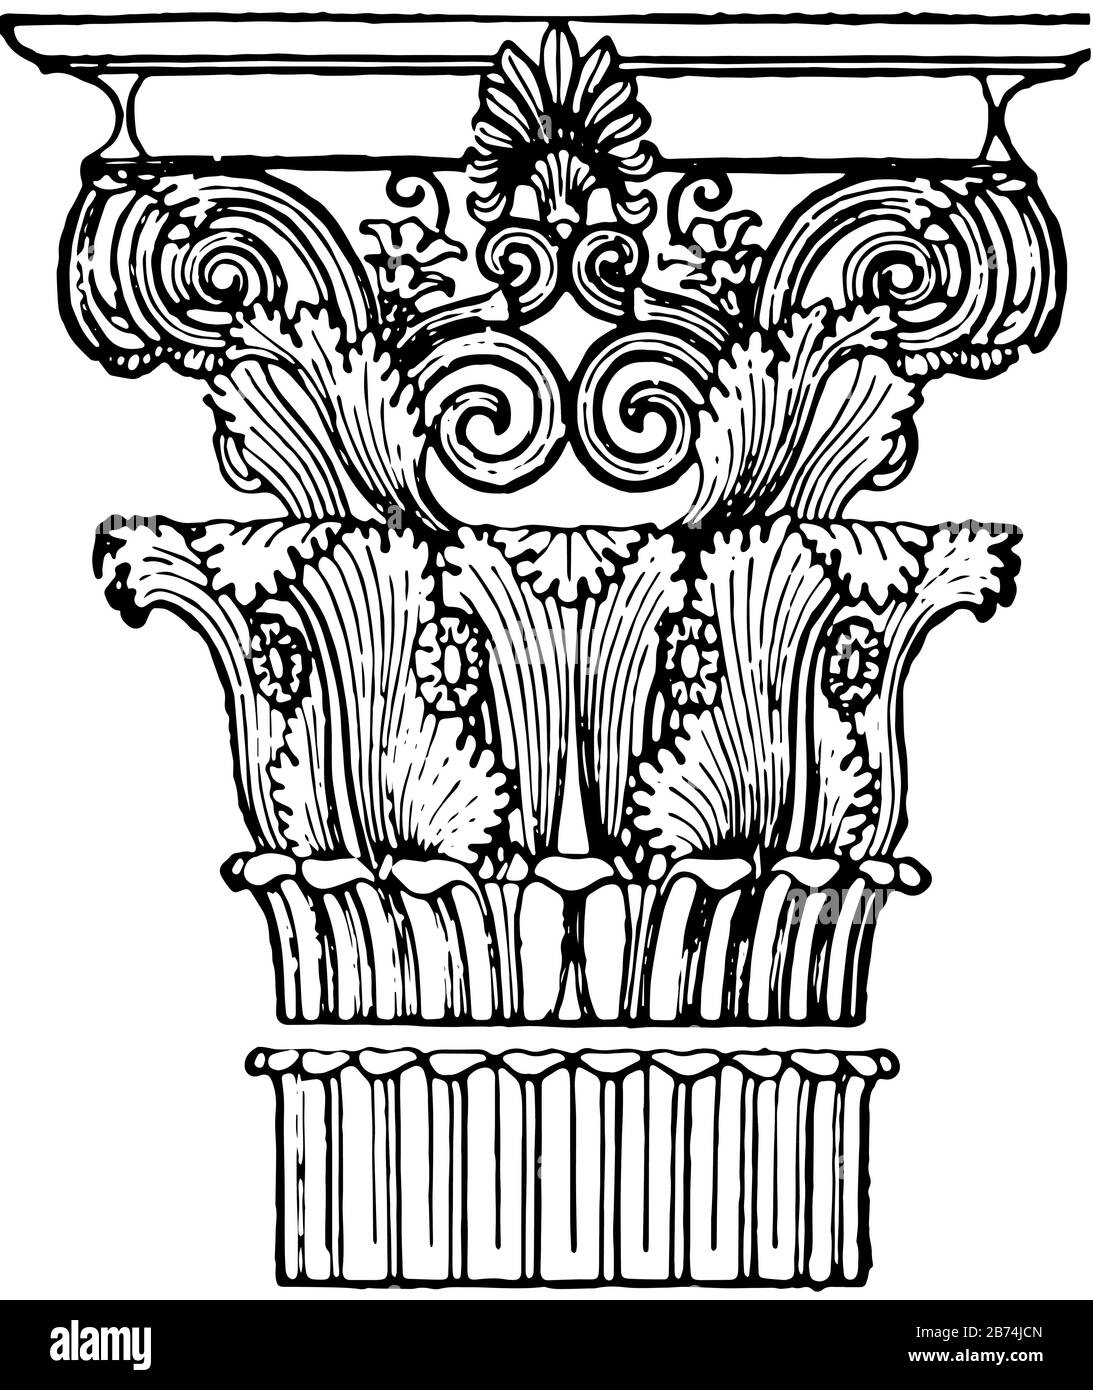 Capitale greca, Corinzia, la città greca, stato di Corinto, creato dallo scultore Callimachus, ha disegnato foglie di acanto in crescita, disegno linea vintage Illustrazione Vettoriale